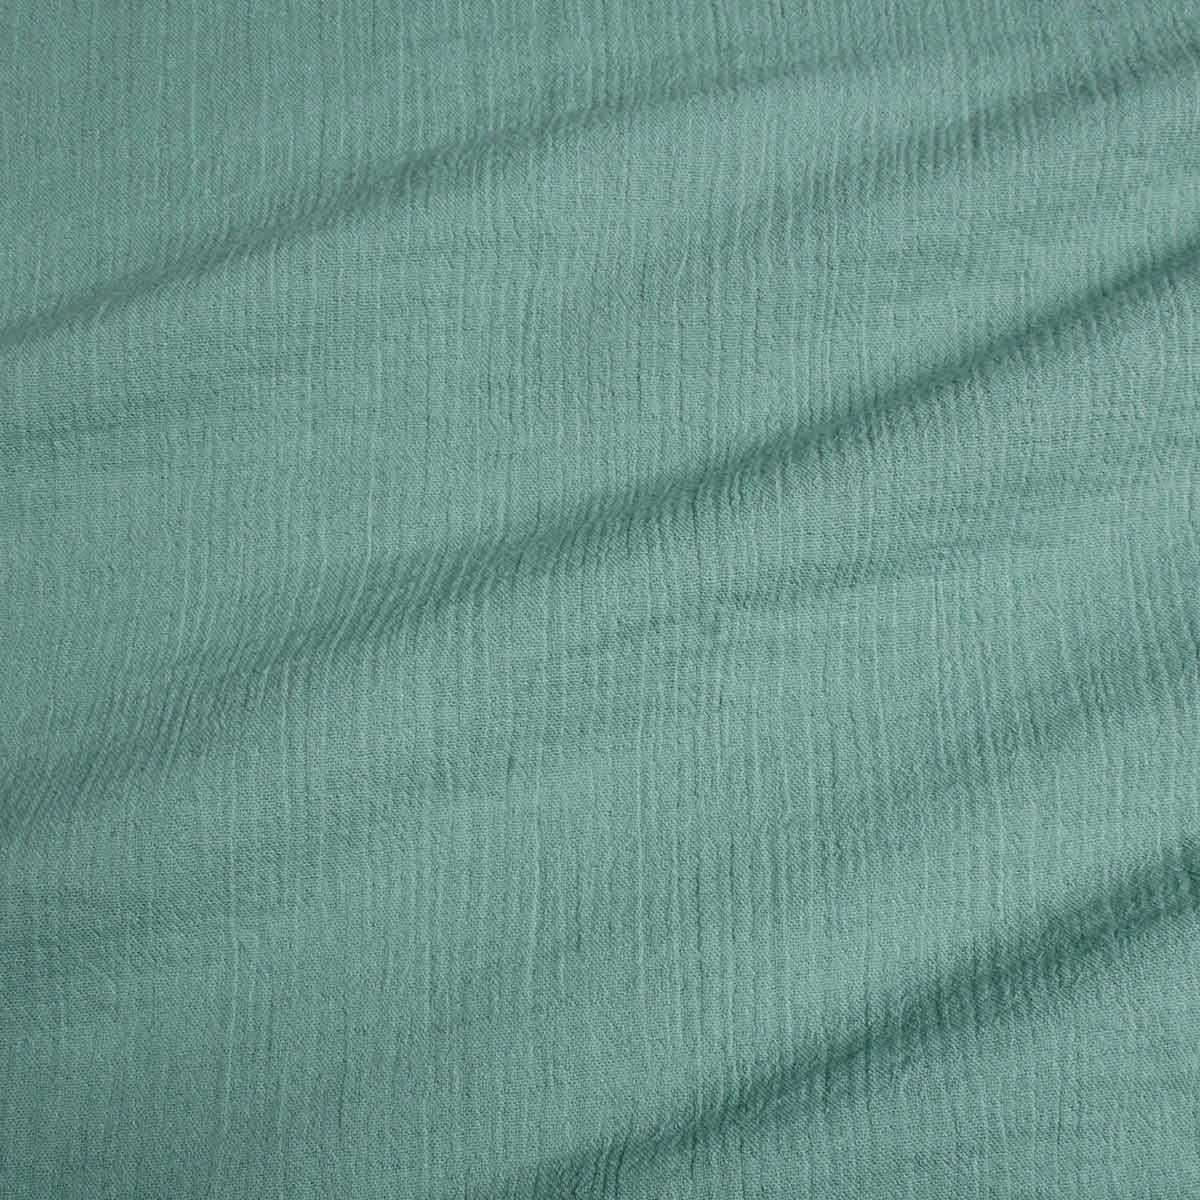 Fabric of organic cotton in Bristol Blue colour